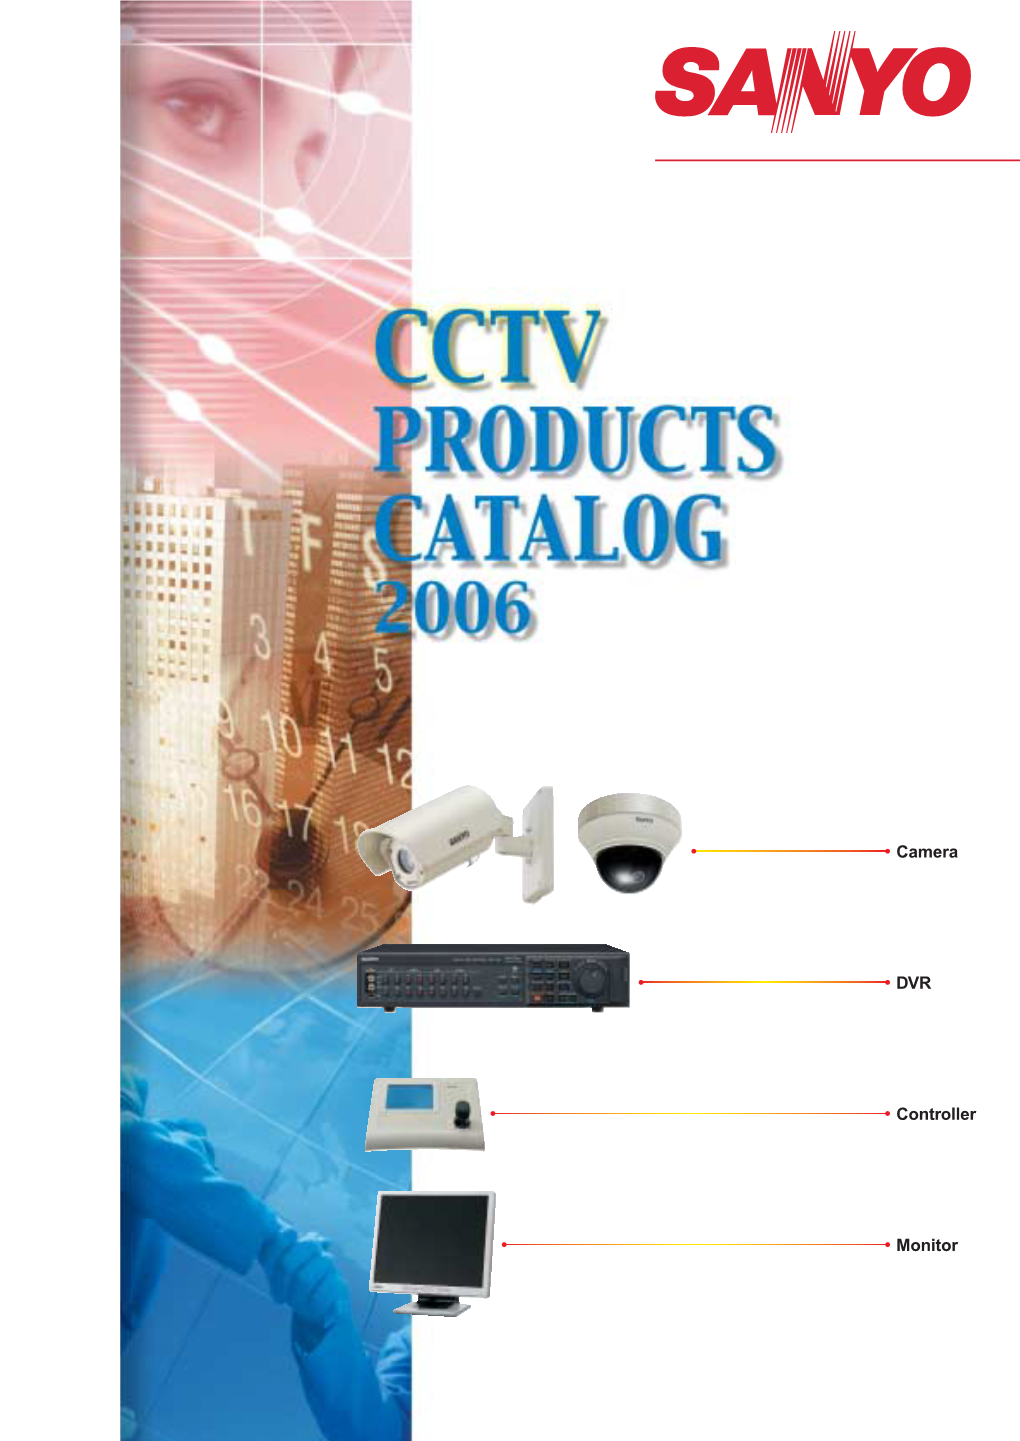 Camera DVR Controller Monitor